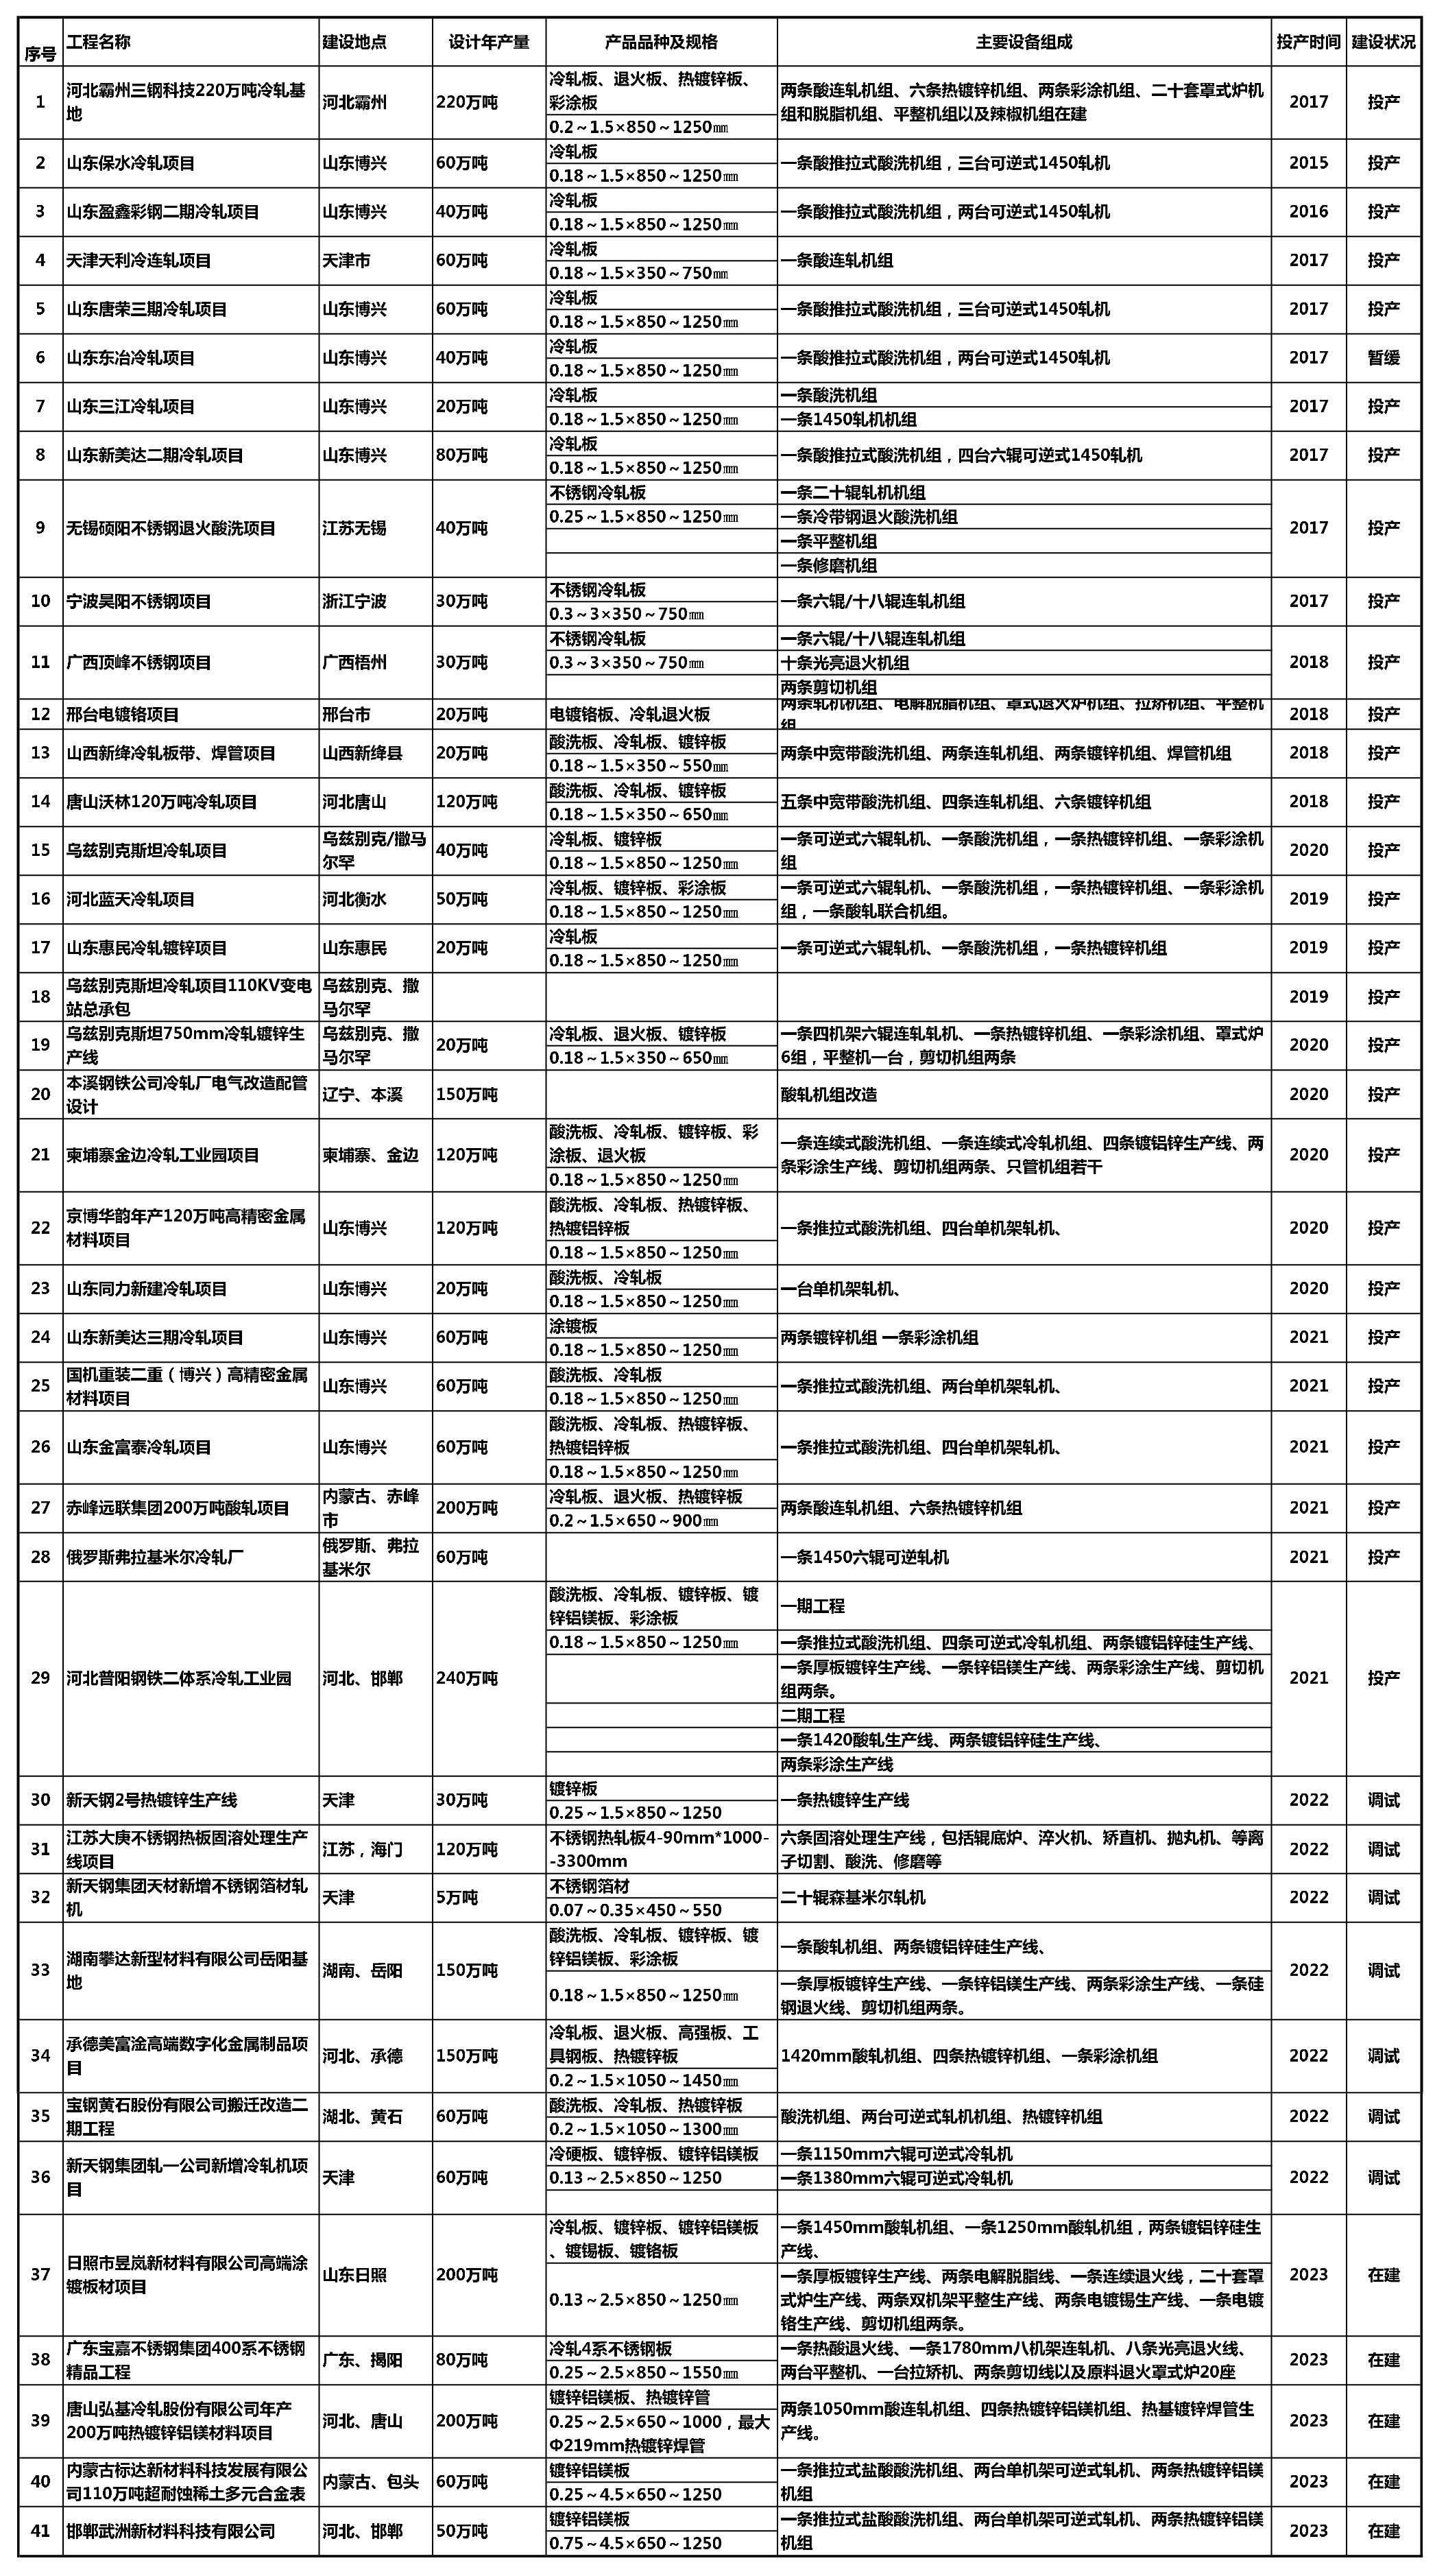 AA上海科兴业绩表（2017~2022）_1.jpg